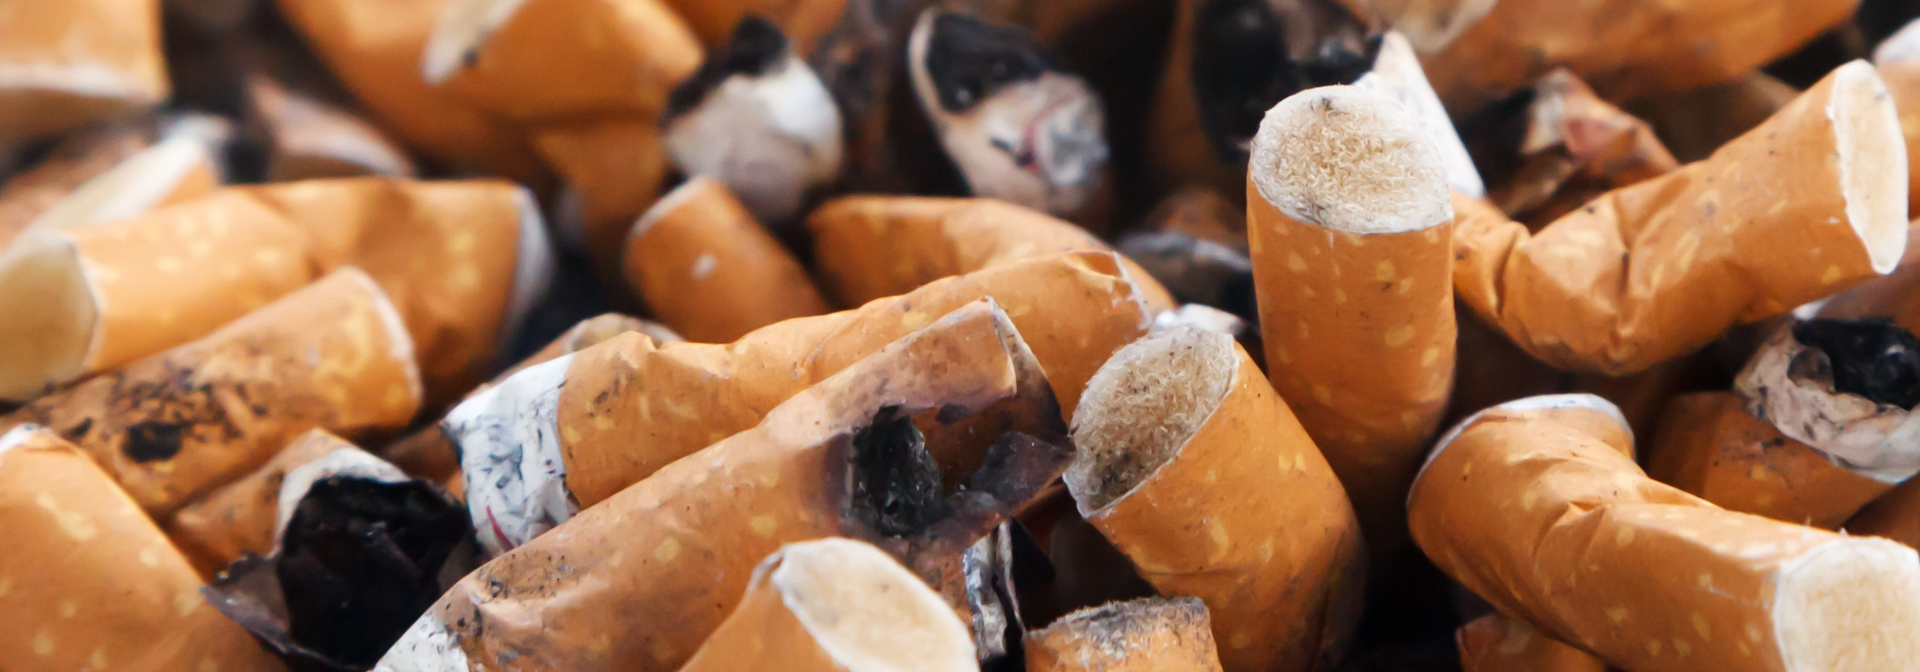 wpływ niedopałków papierosów na środowisko jest ogromny - Mikołaj Basiński, Szukam w lesie